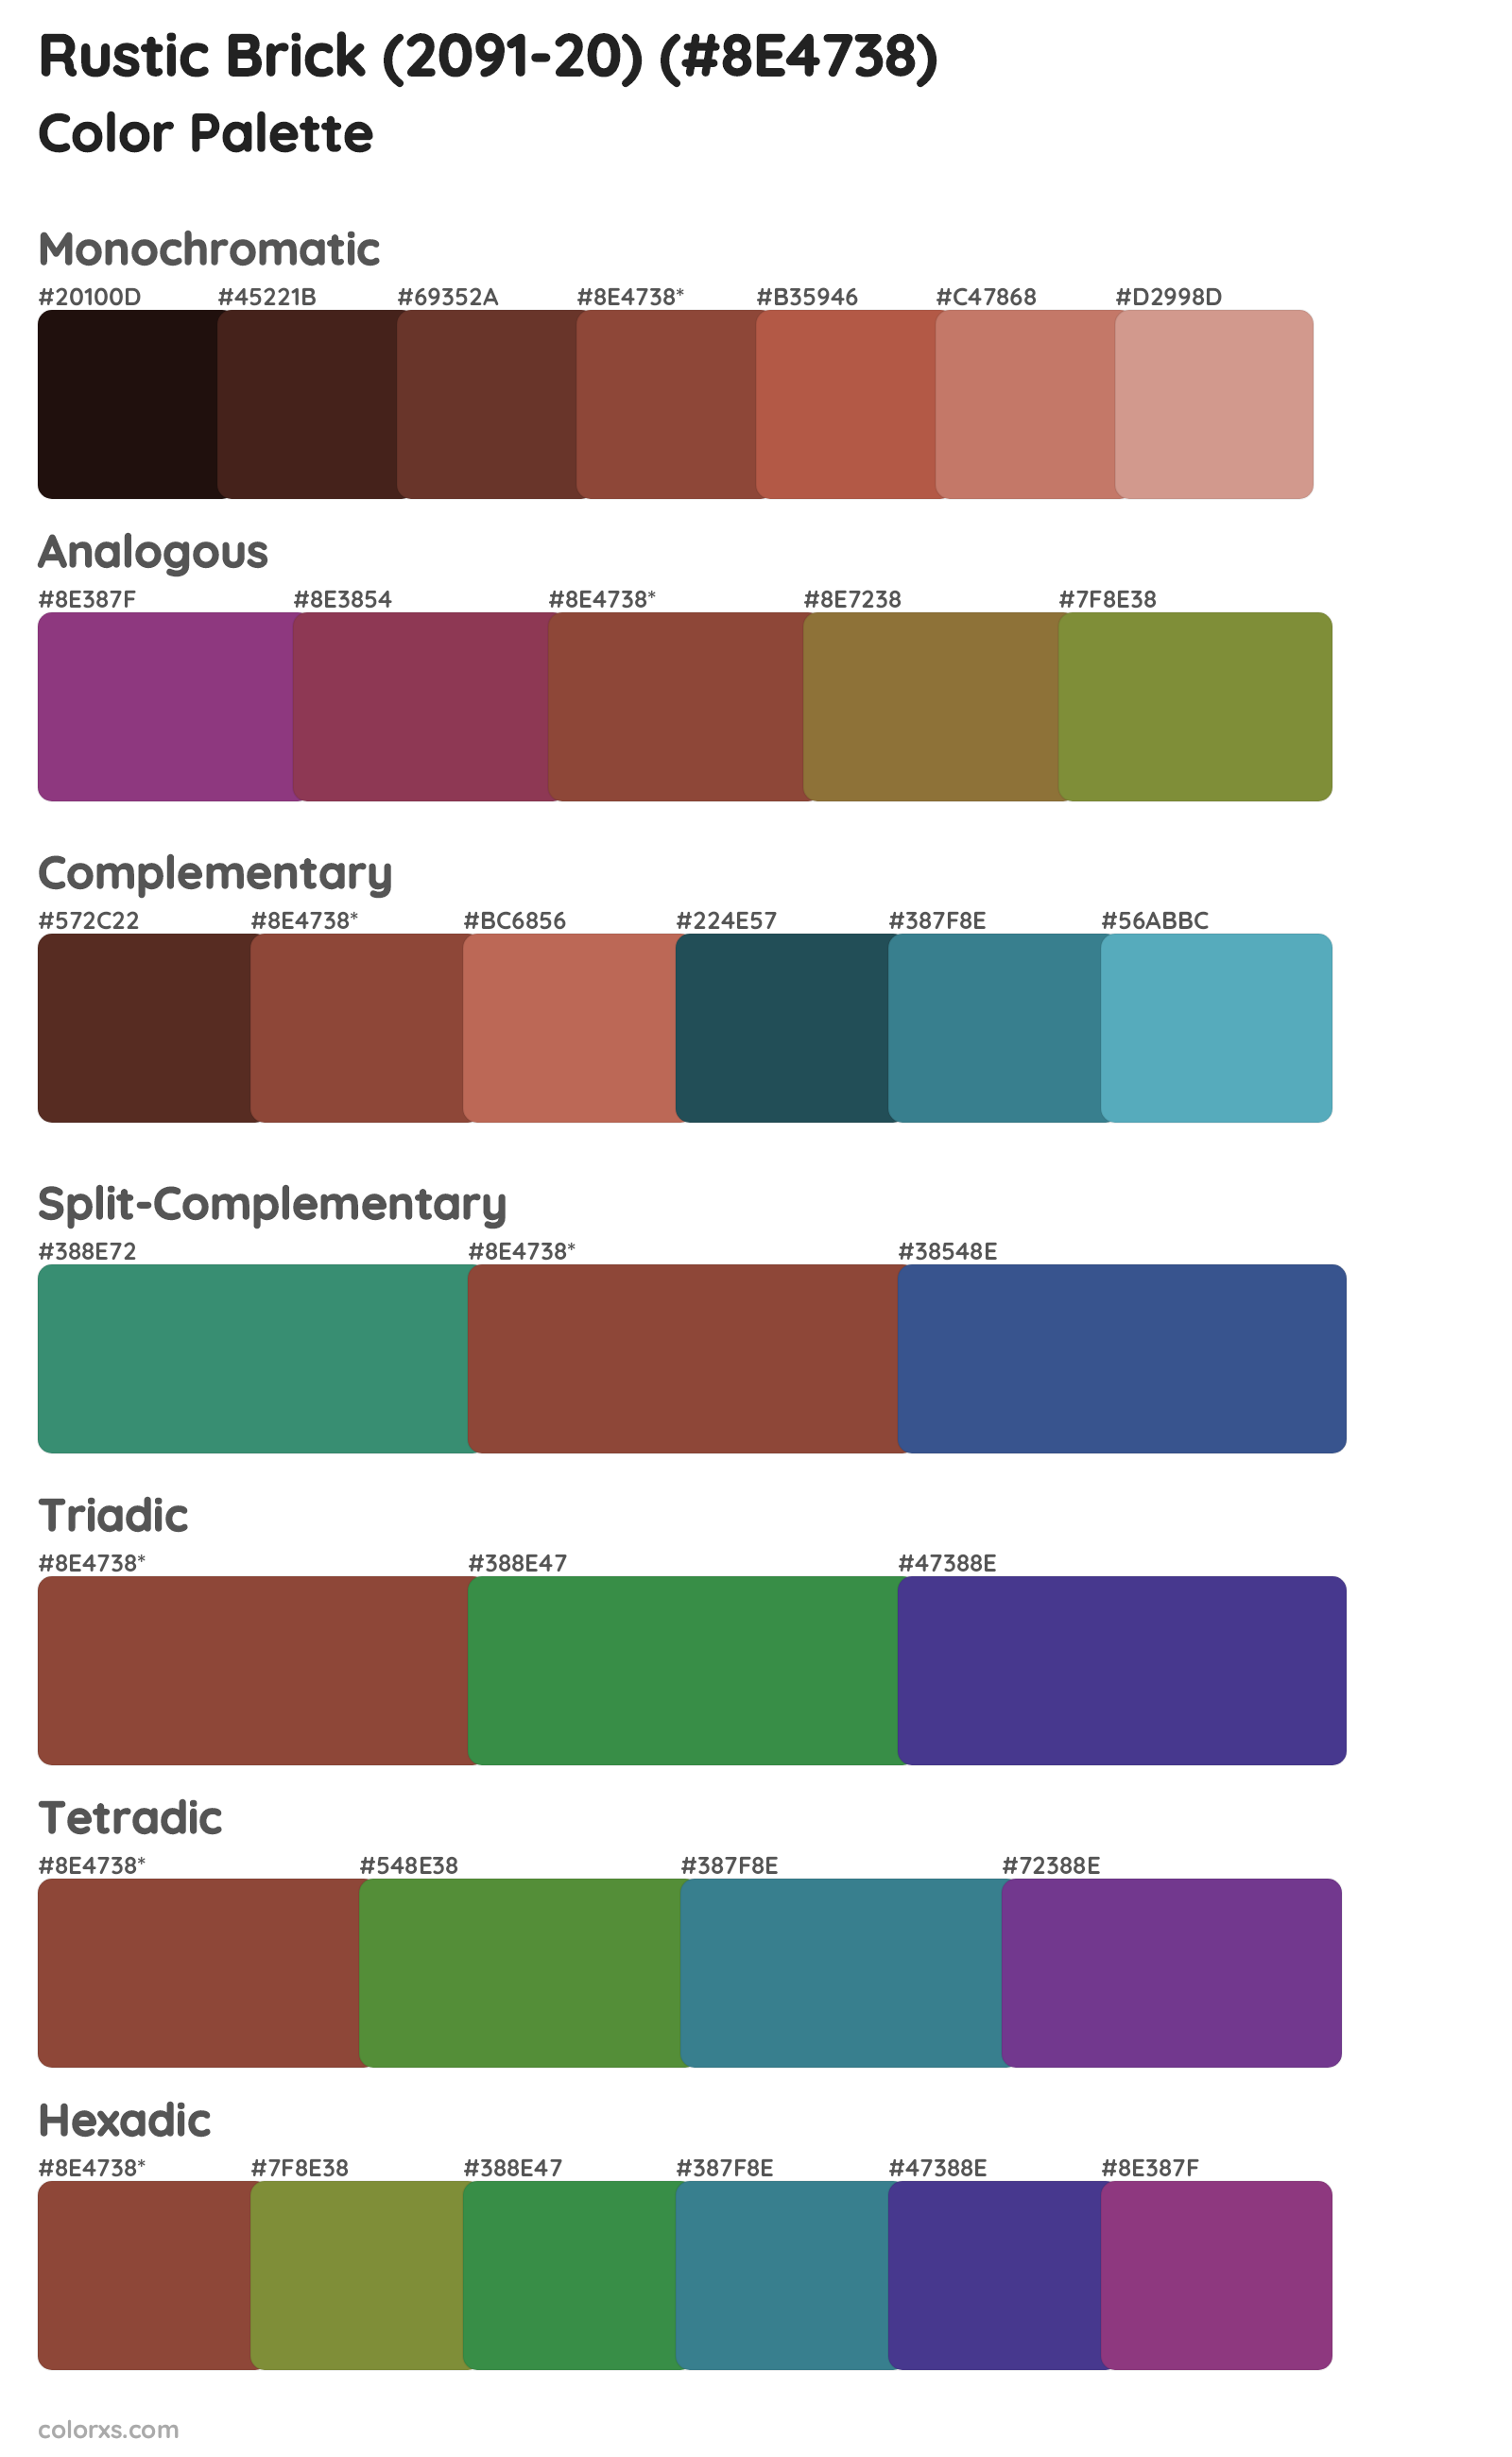 Rustic Brick (2091-20) Color Scheme Palettes